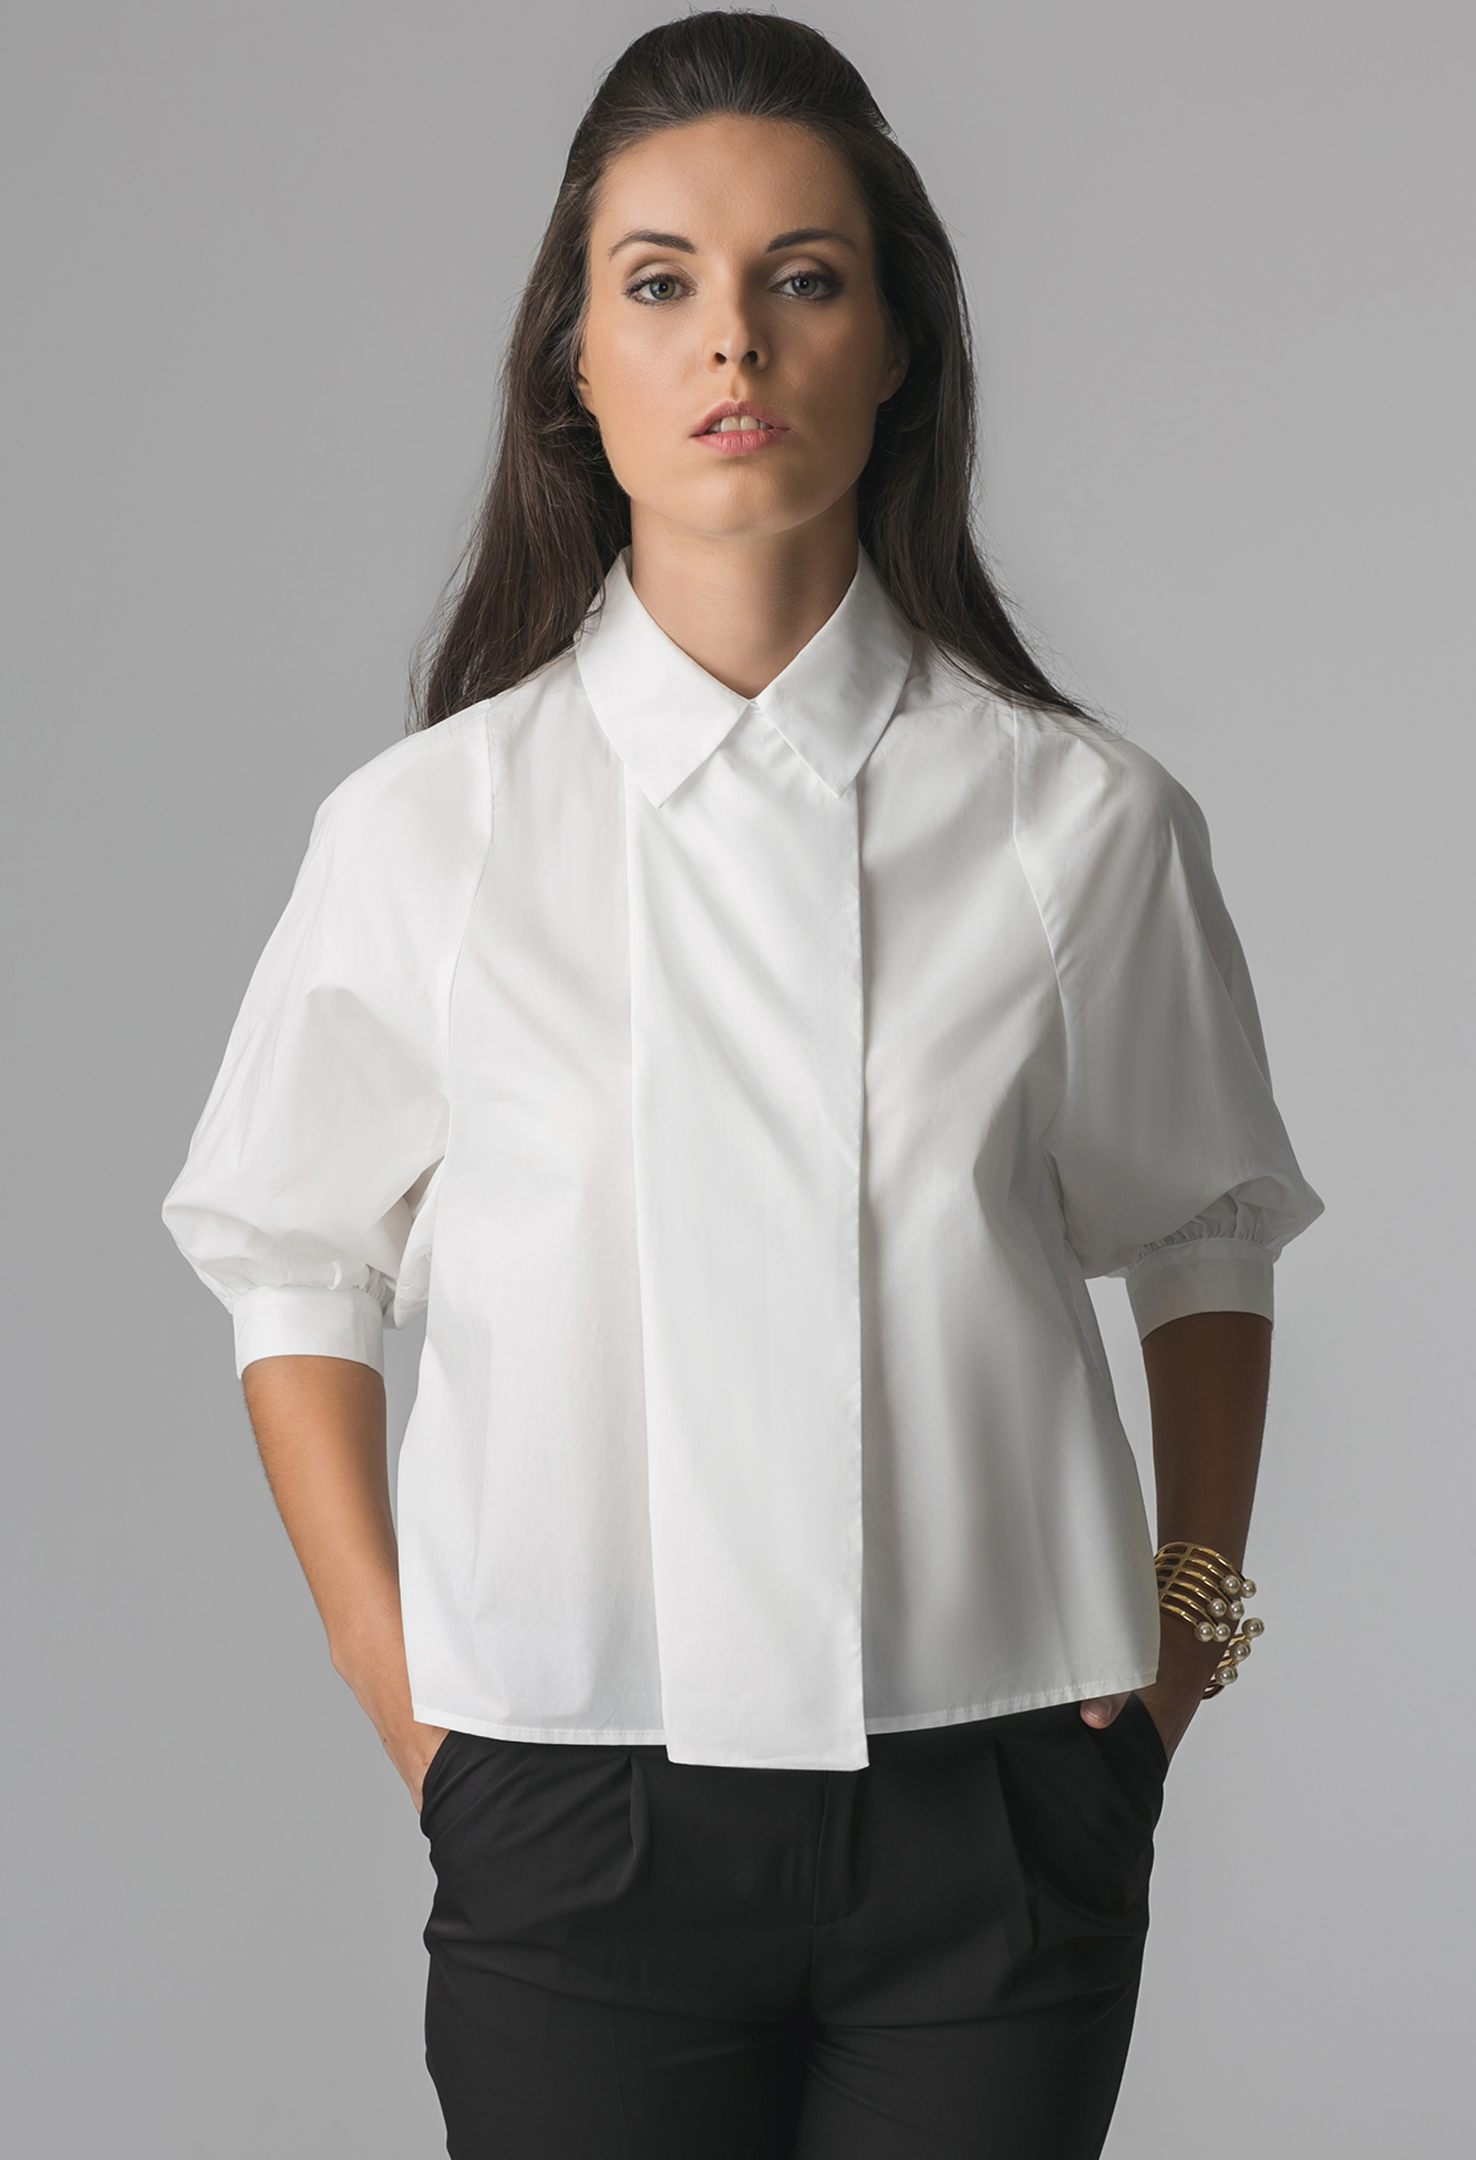 Белые офисные блузки. Рубашки женские стильные. Белая блузка. Женщина в блузке. Необычные рубашки женские.